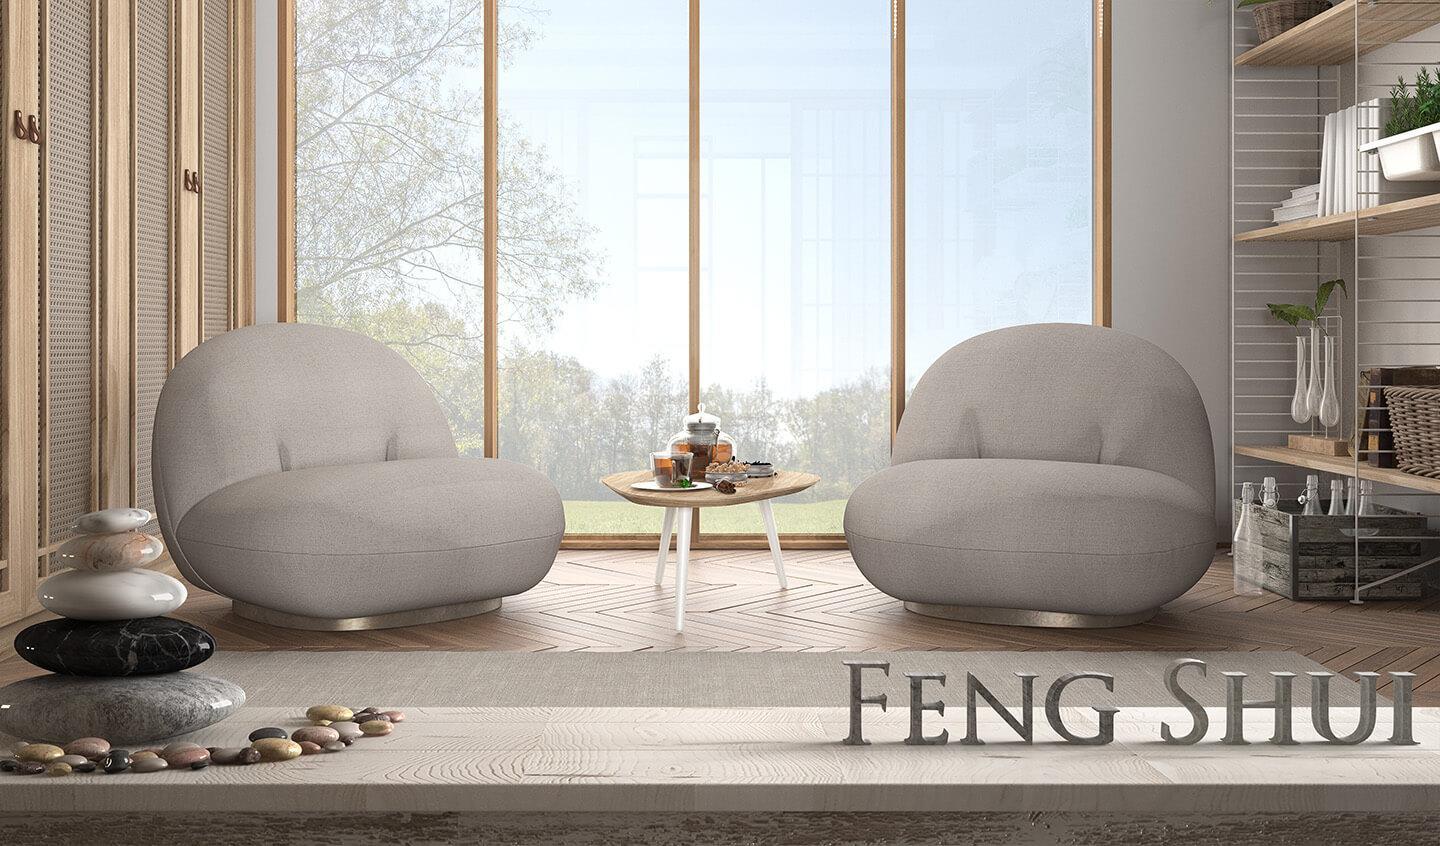 Feng shui: principios básicos para el hogar